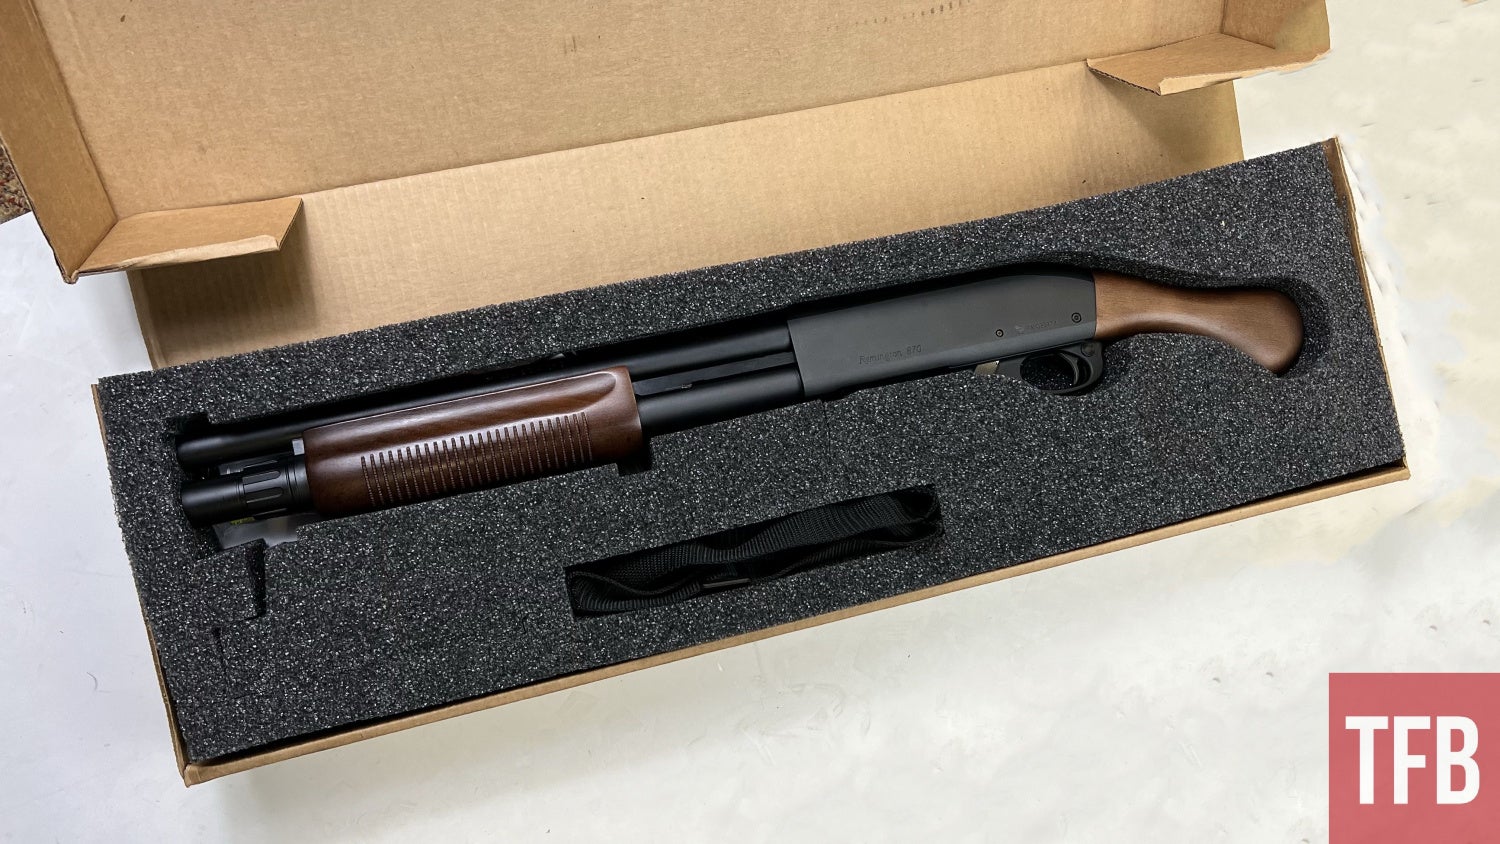 TFB Review: Remington 870 TAC-14 Hardwood